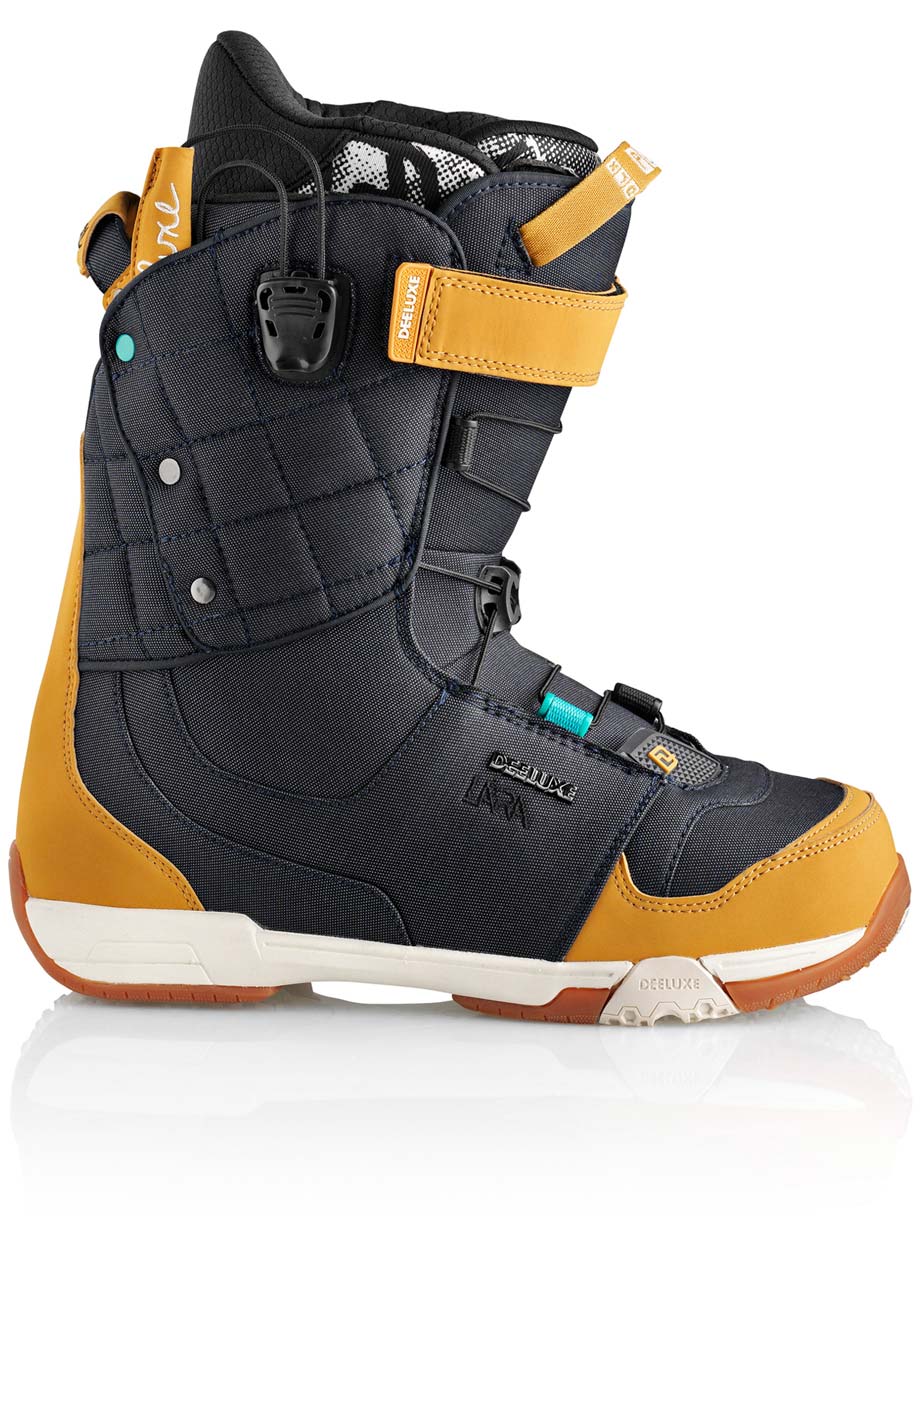 Ботинки сноубордические Deeluxe Ray Lara  размер 24,0 denim (темный джинс + беж кож.зам) 2013 год